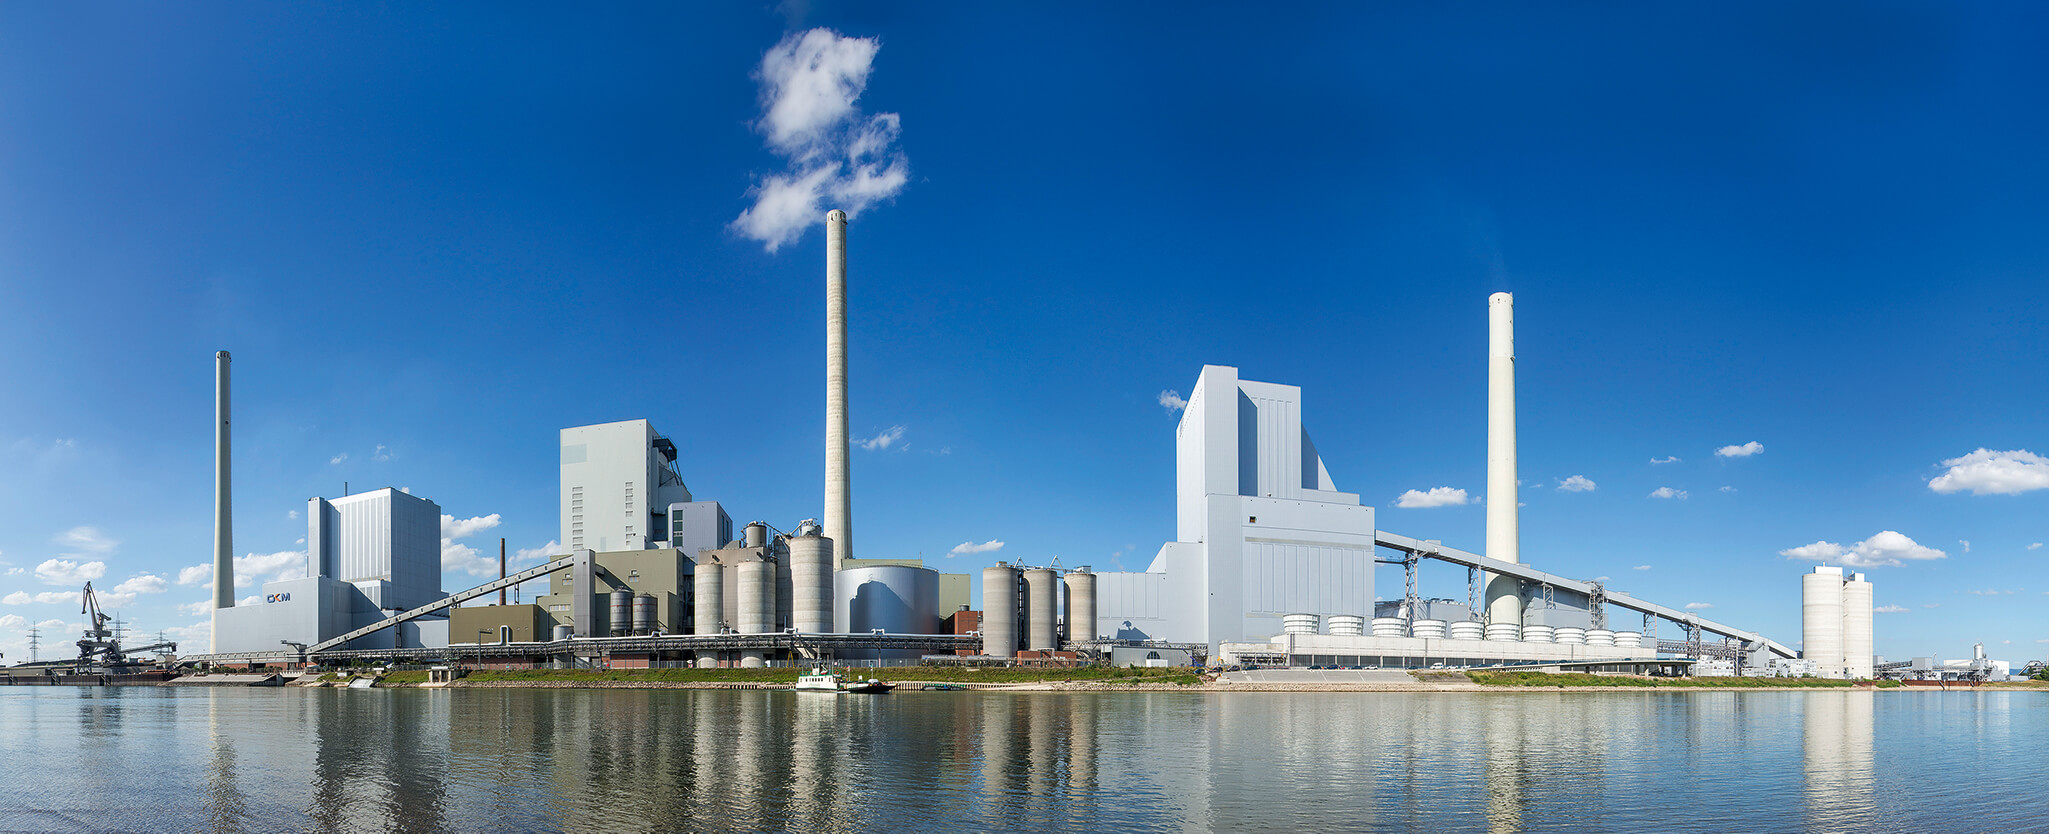 Das Großkraftwerk Mannheim ist einer der fünf Standorte, an denen die GWP errichtet werden.